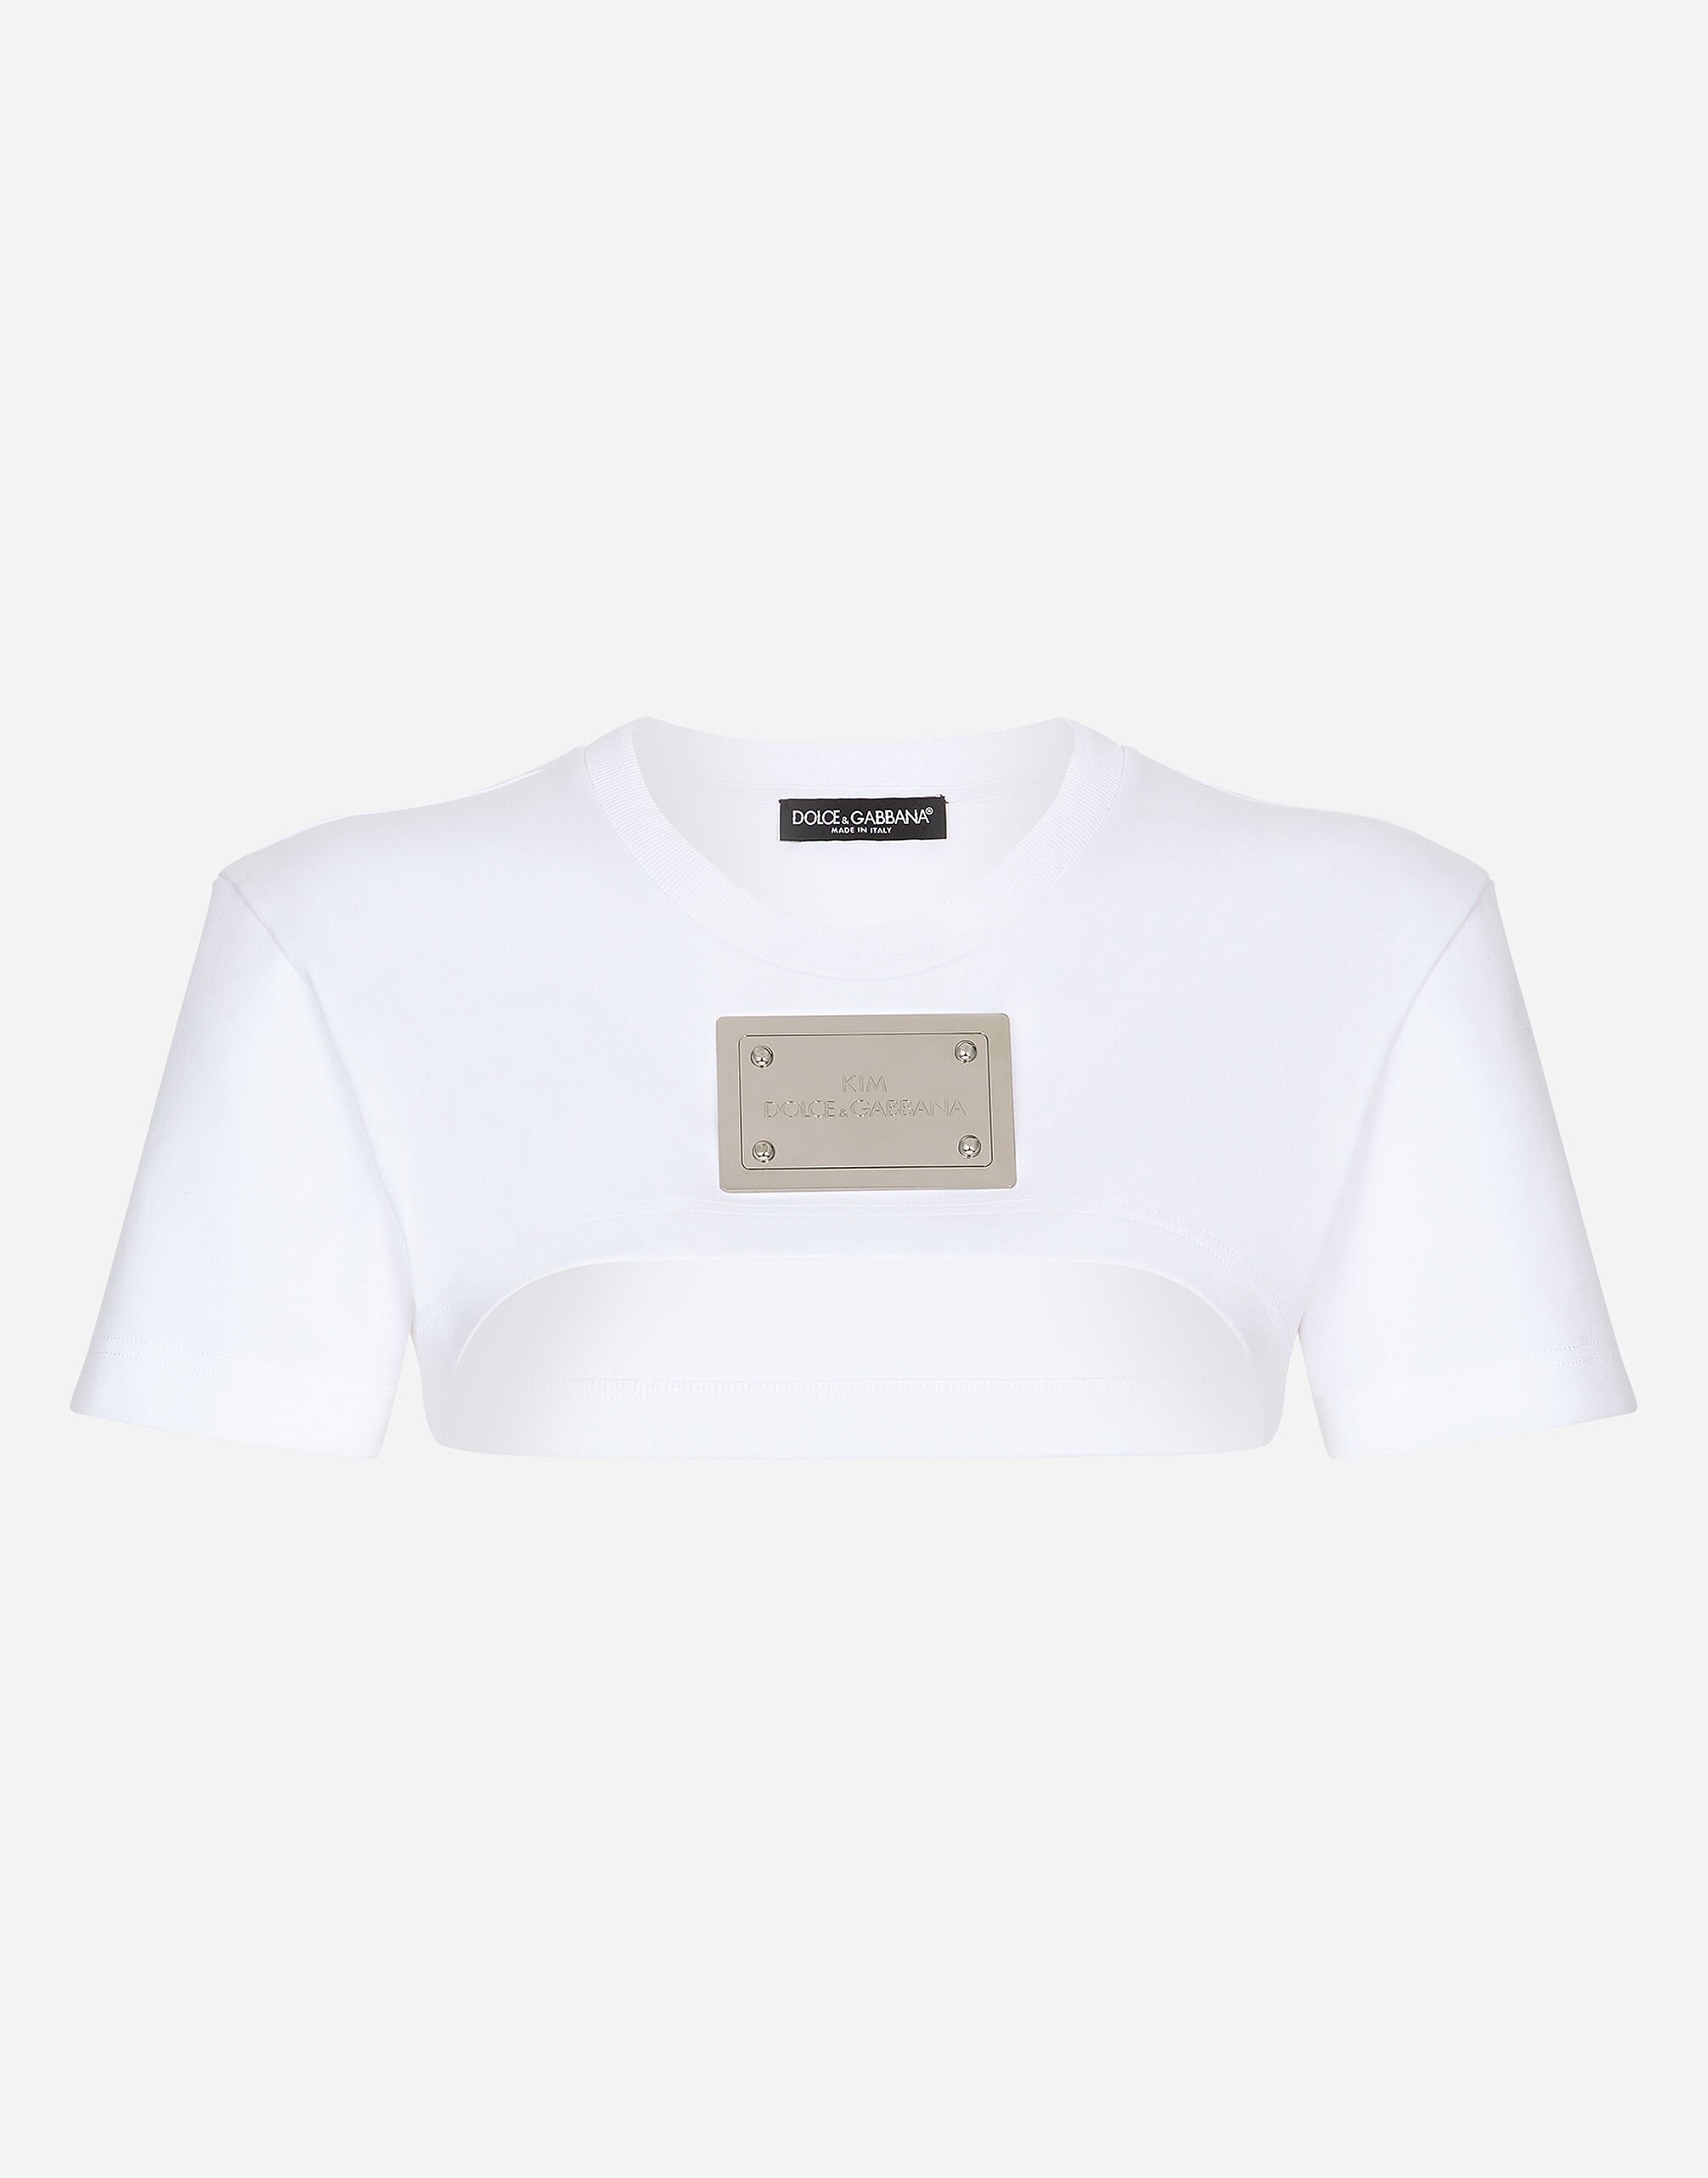 Dolce & Gabbana KIM DOLCE&GABBANA Cropped jersey T-shirt with “KIM Dolce&Gabbana” tag Black F9M32ZHUML6